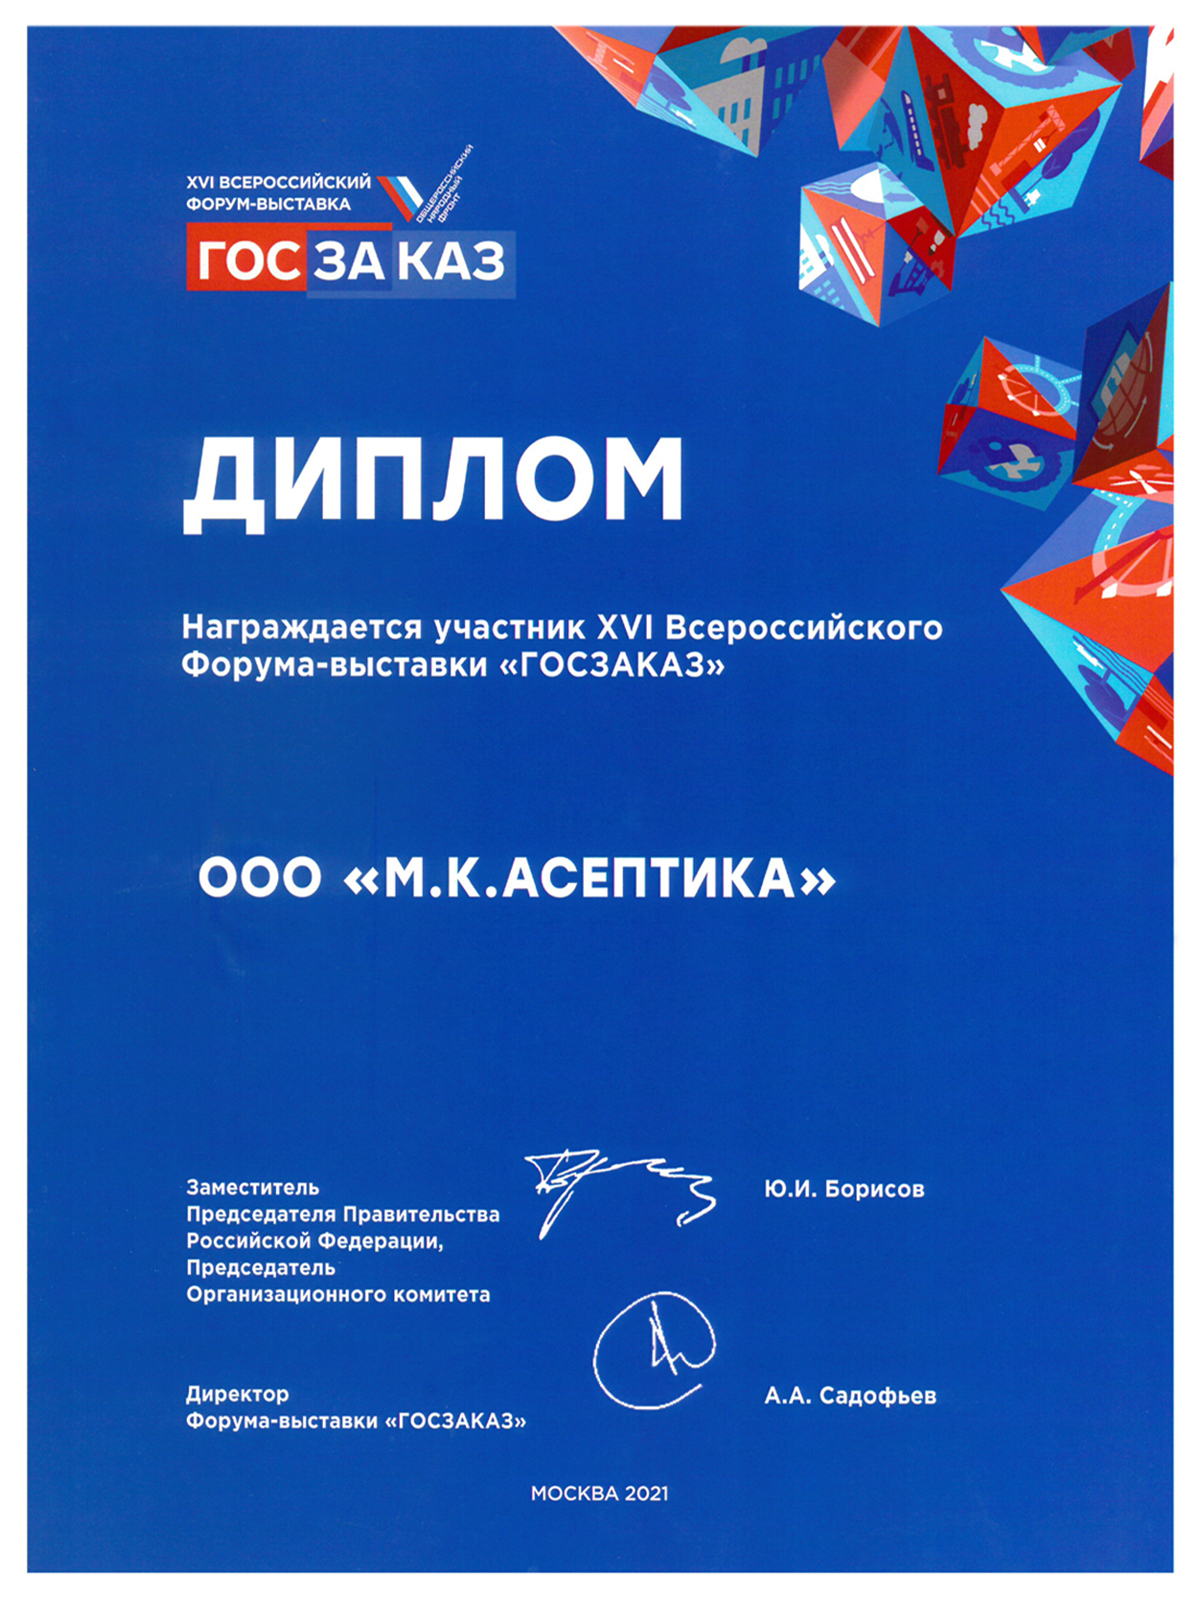 Диплом участника XVI Всероссийского форума-выставки "Госзаказ"